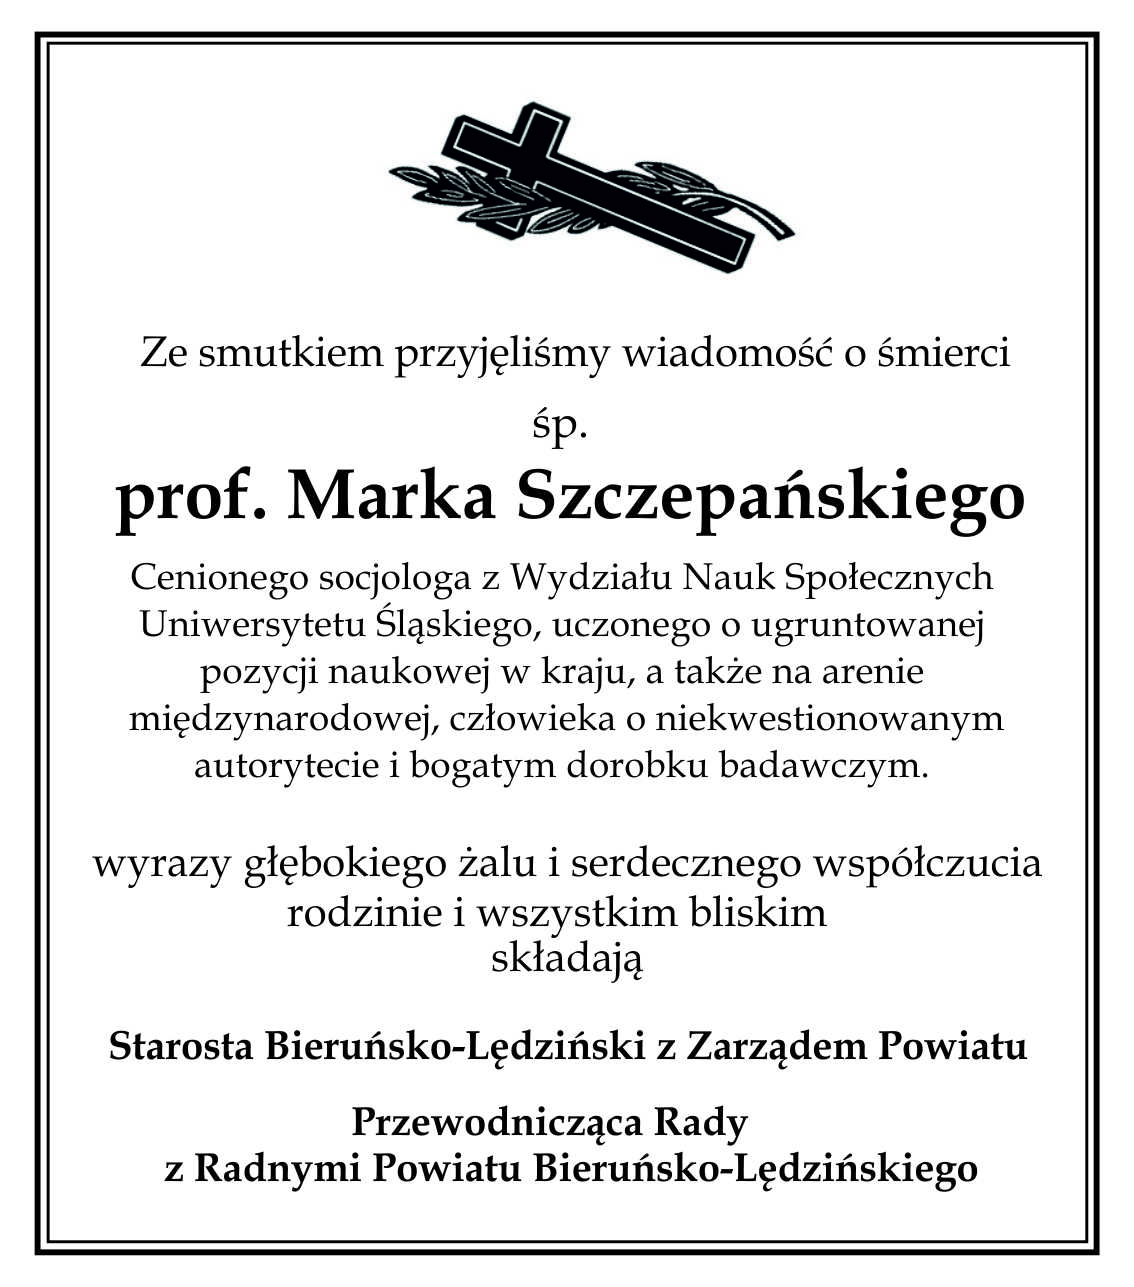 Kondolencje prof. M. Szczepański